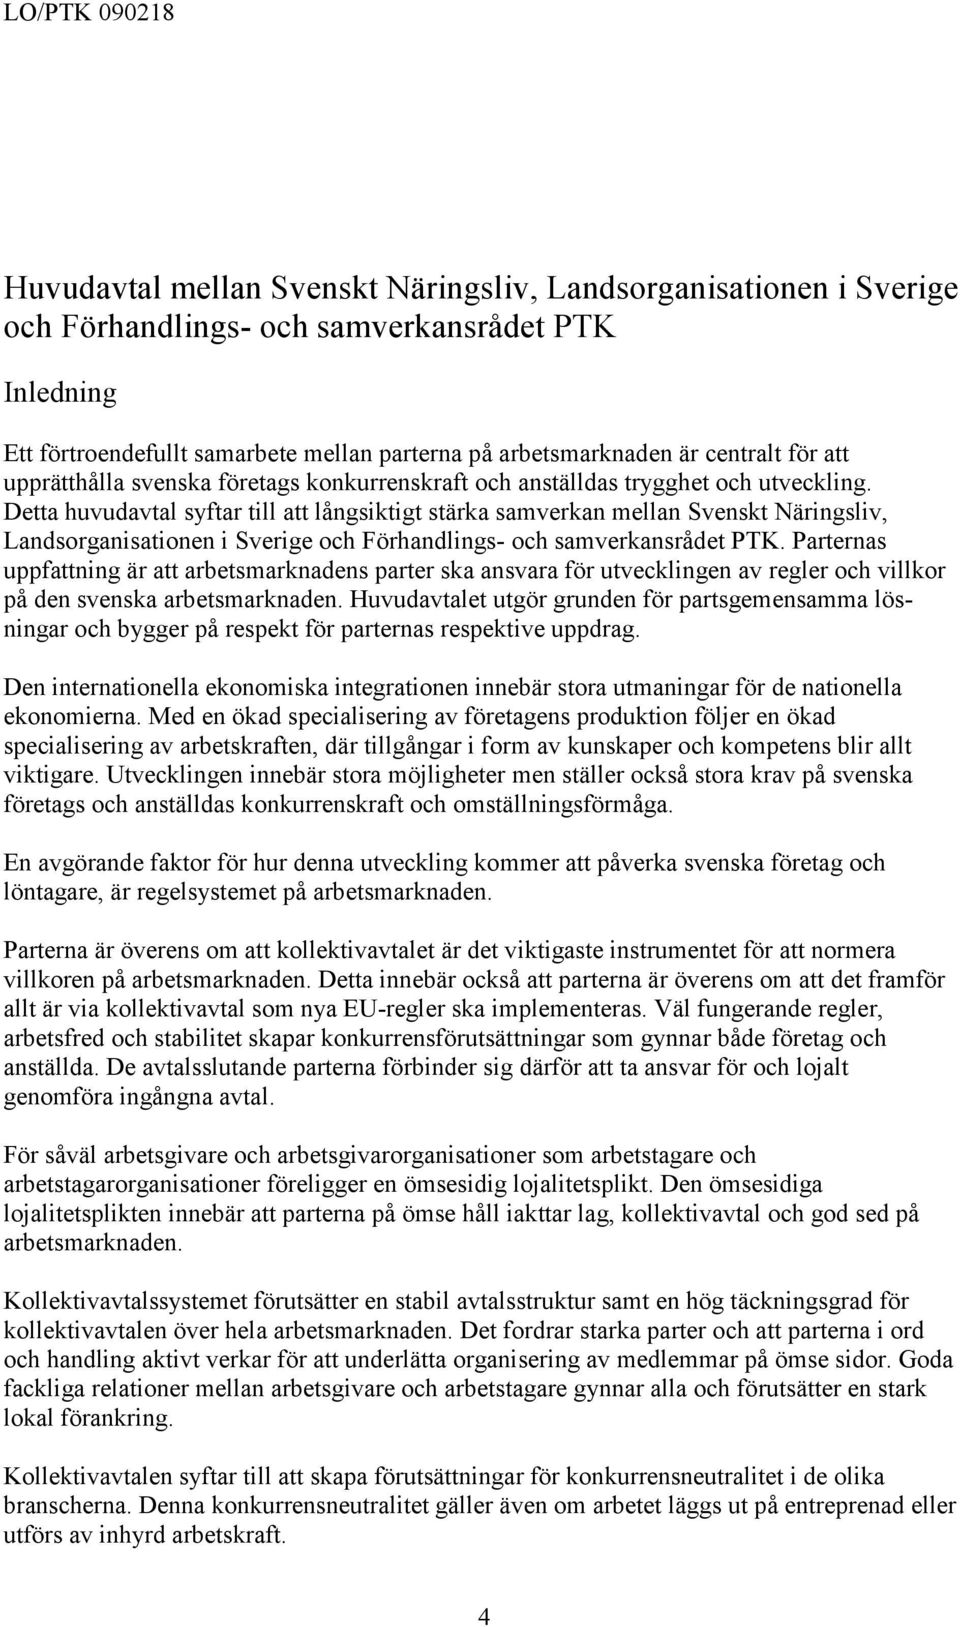 Detta huvudavtal syftar till att långsiktigt stärka samverkan mellan Svenskt Näringsliv, Landsorganisationen i Sverige och Förhandlings- och samverkansrådet PTK.